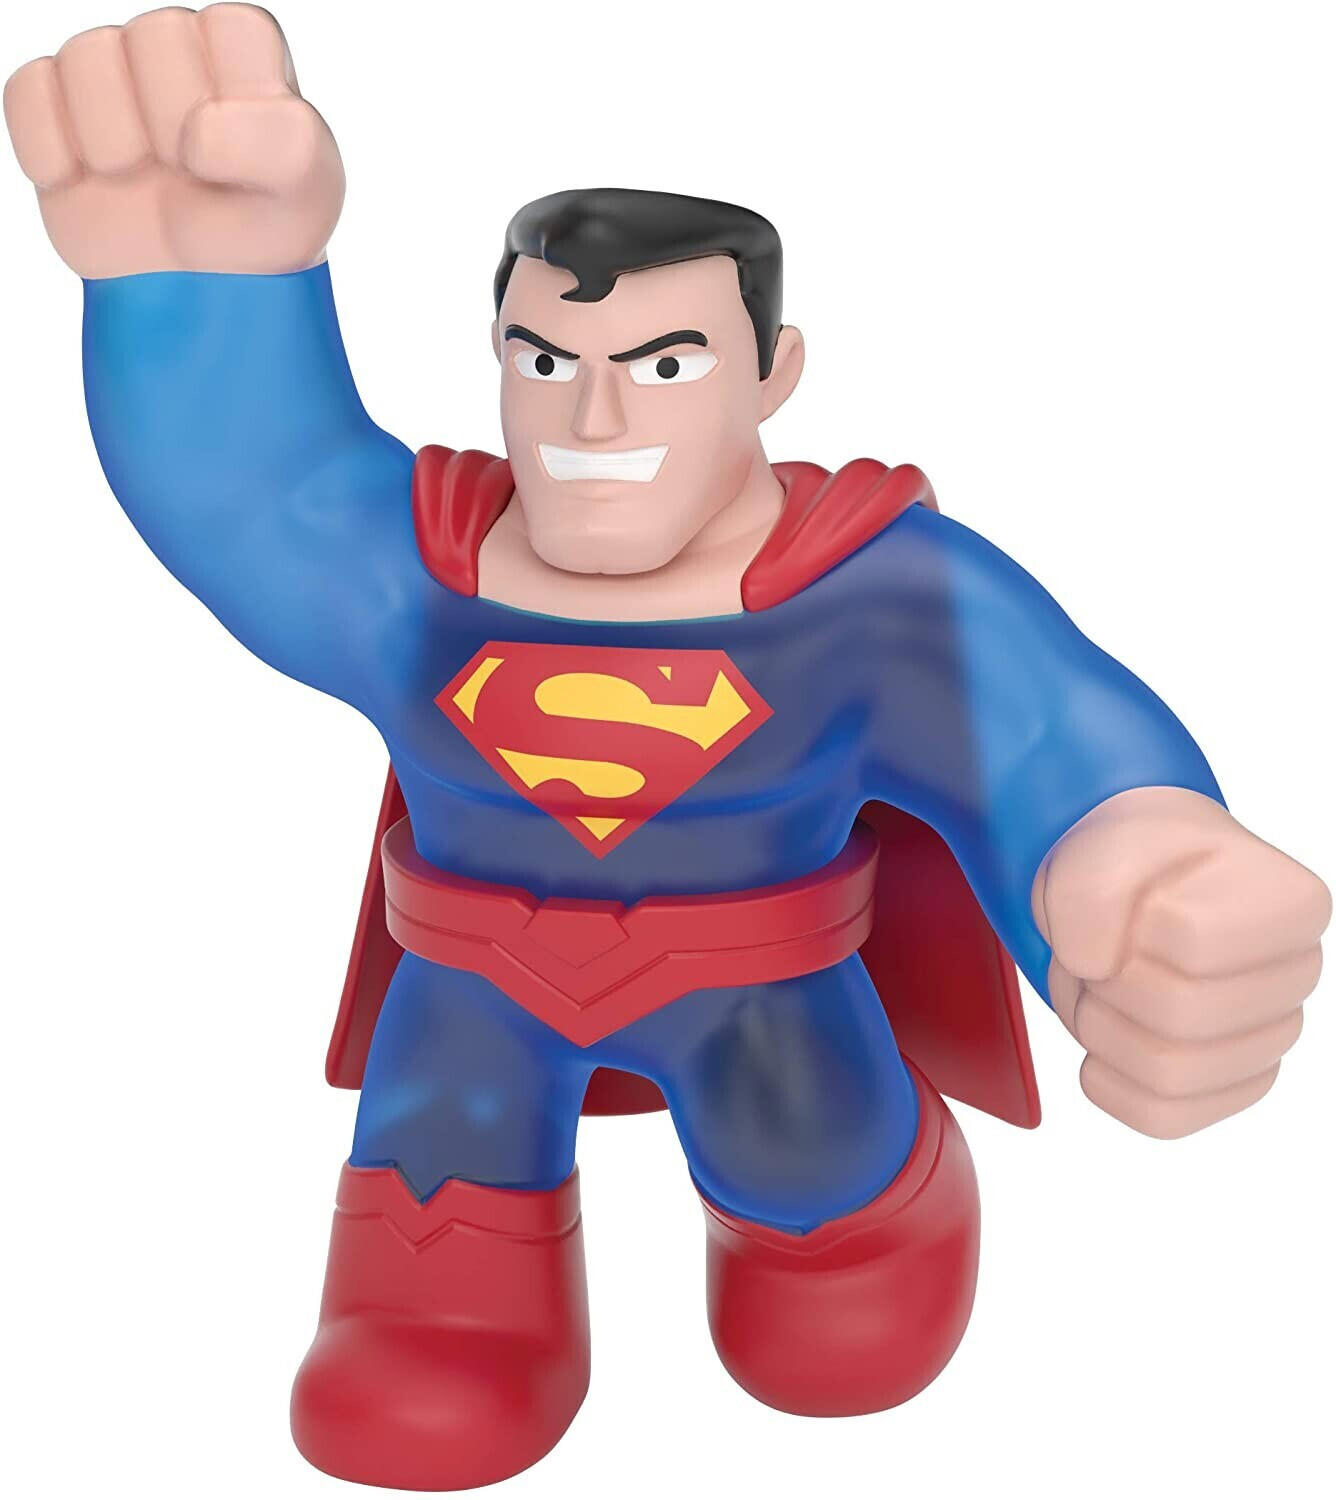 Moose Toys Heroes of Goo Jit Zu Super Heroes - Superman